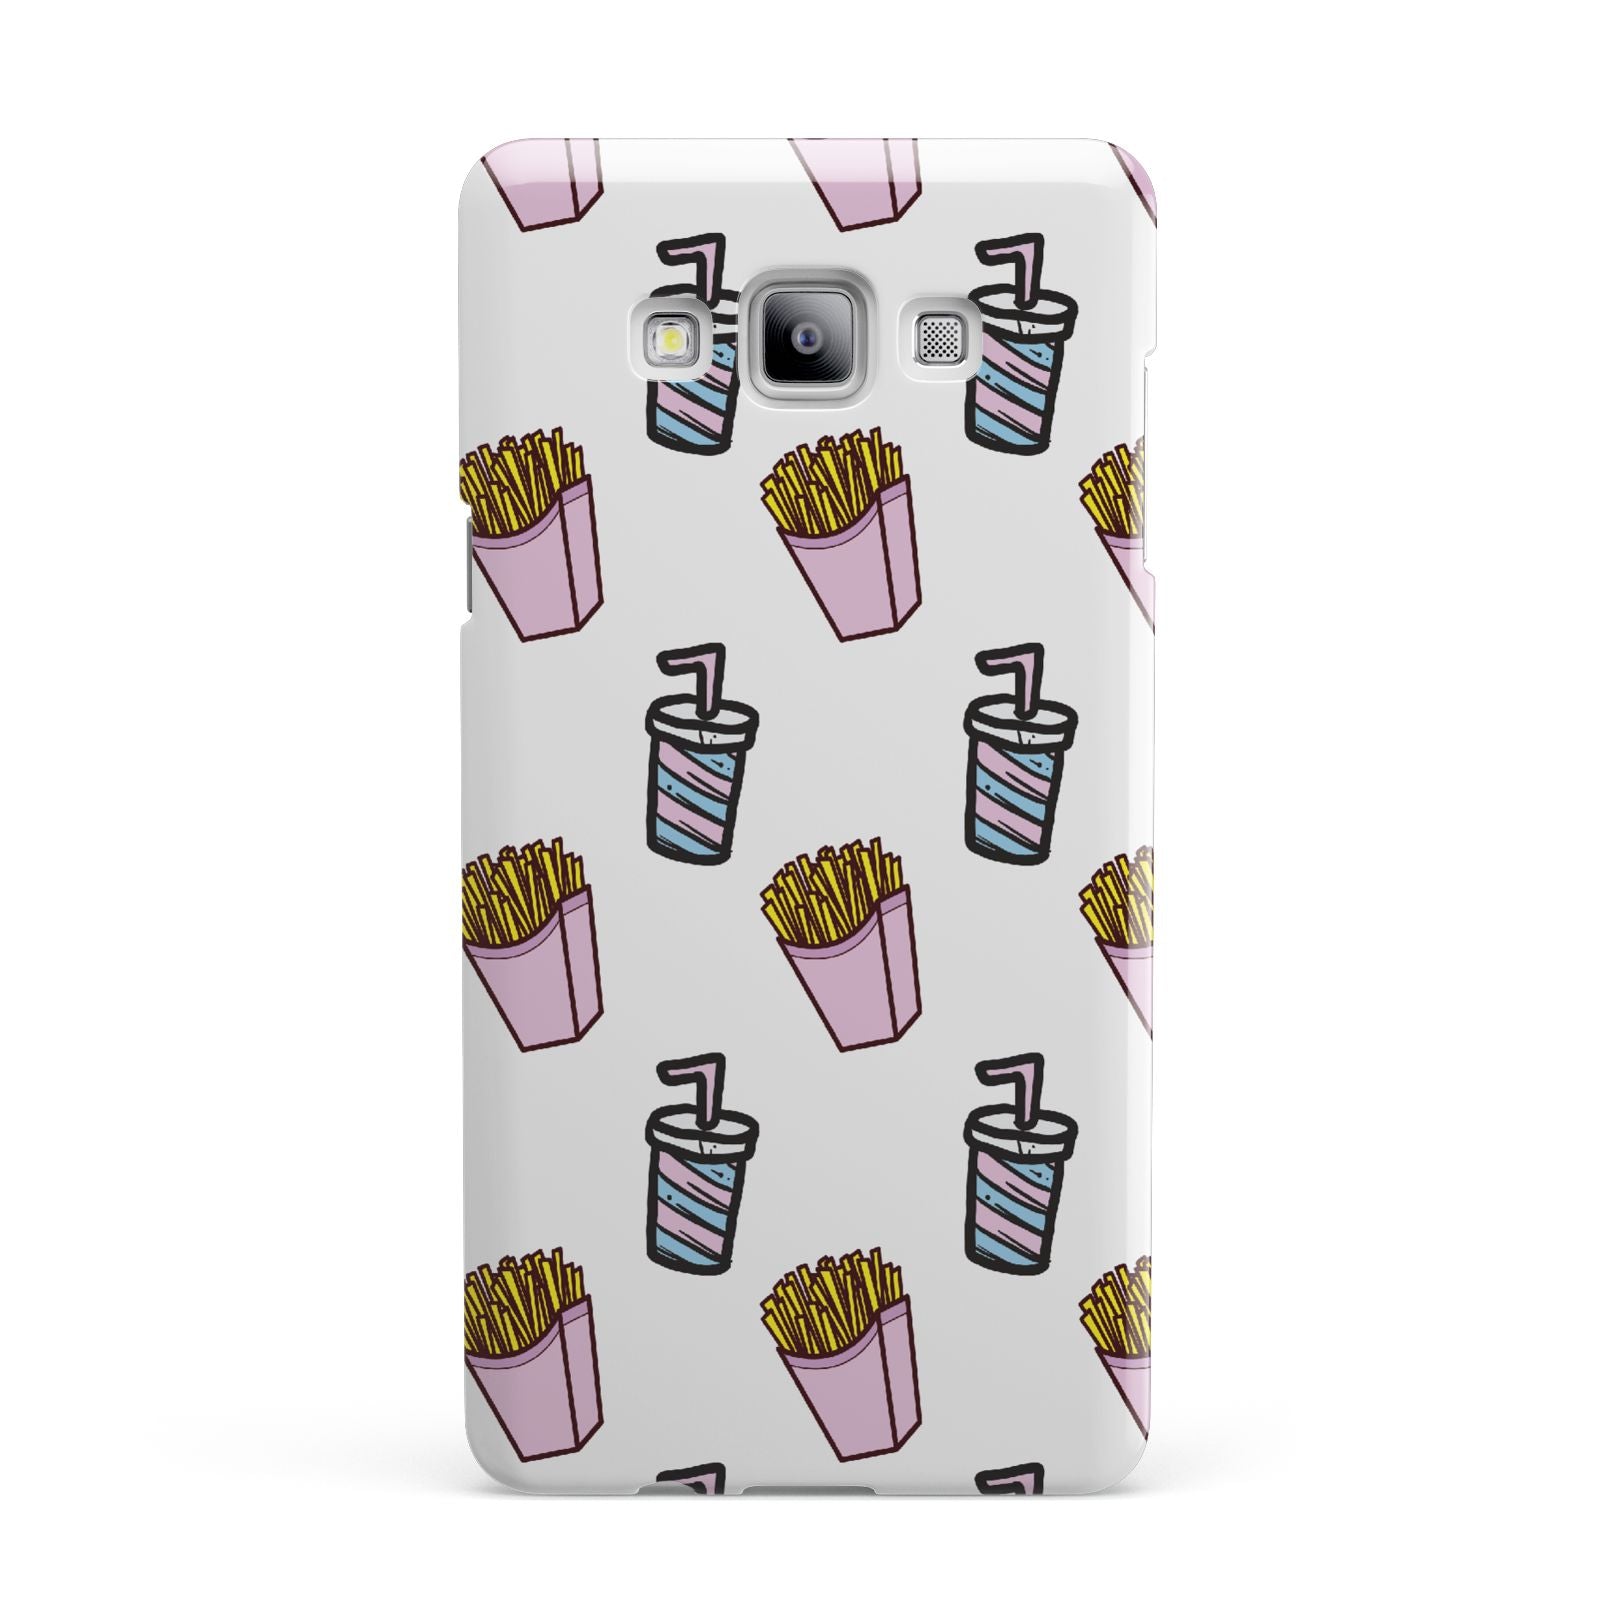 Fries Shake Fast Food Samsung Galaxy A7 2015 Case